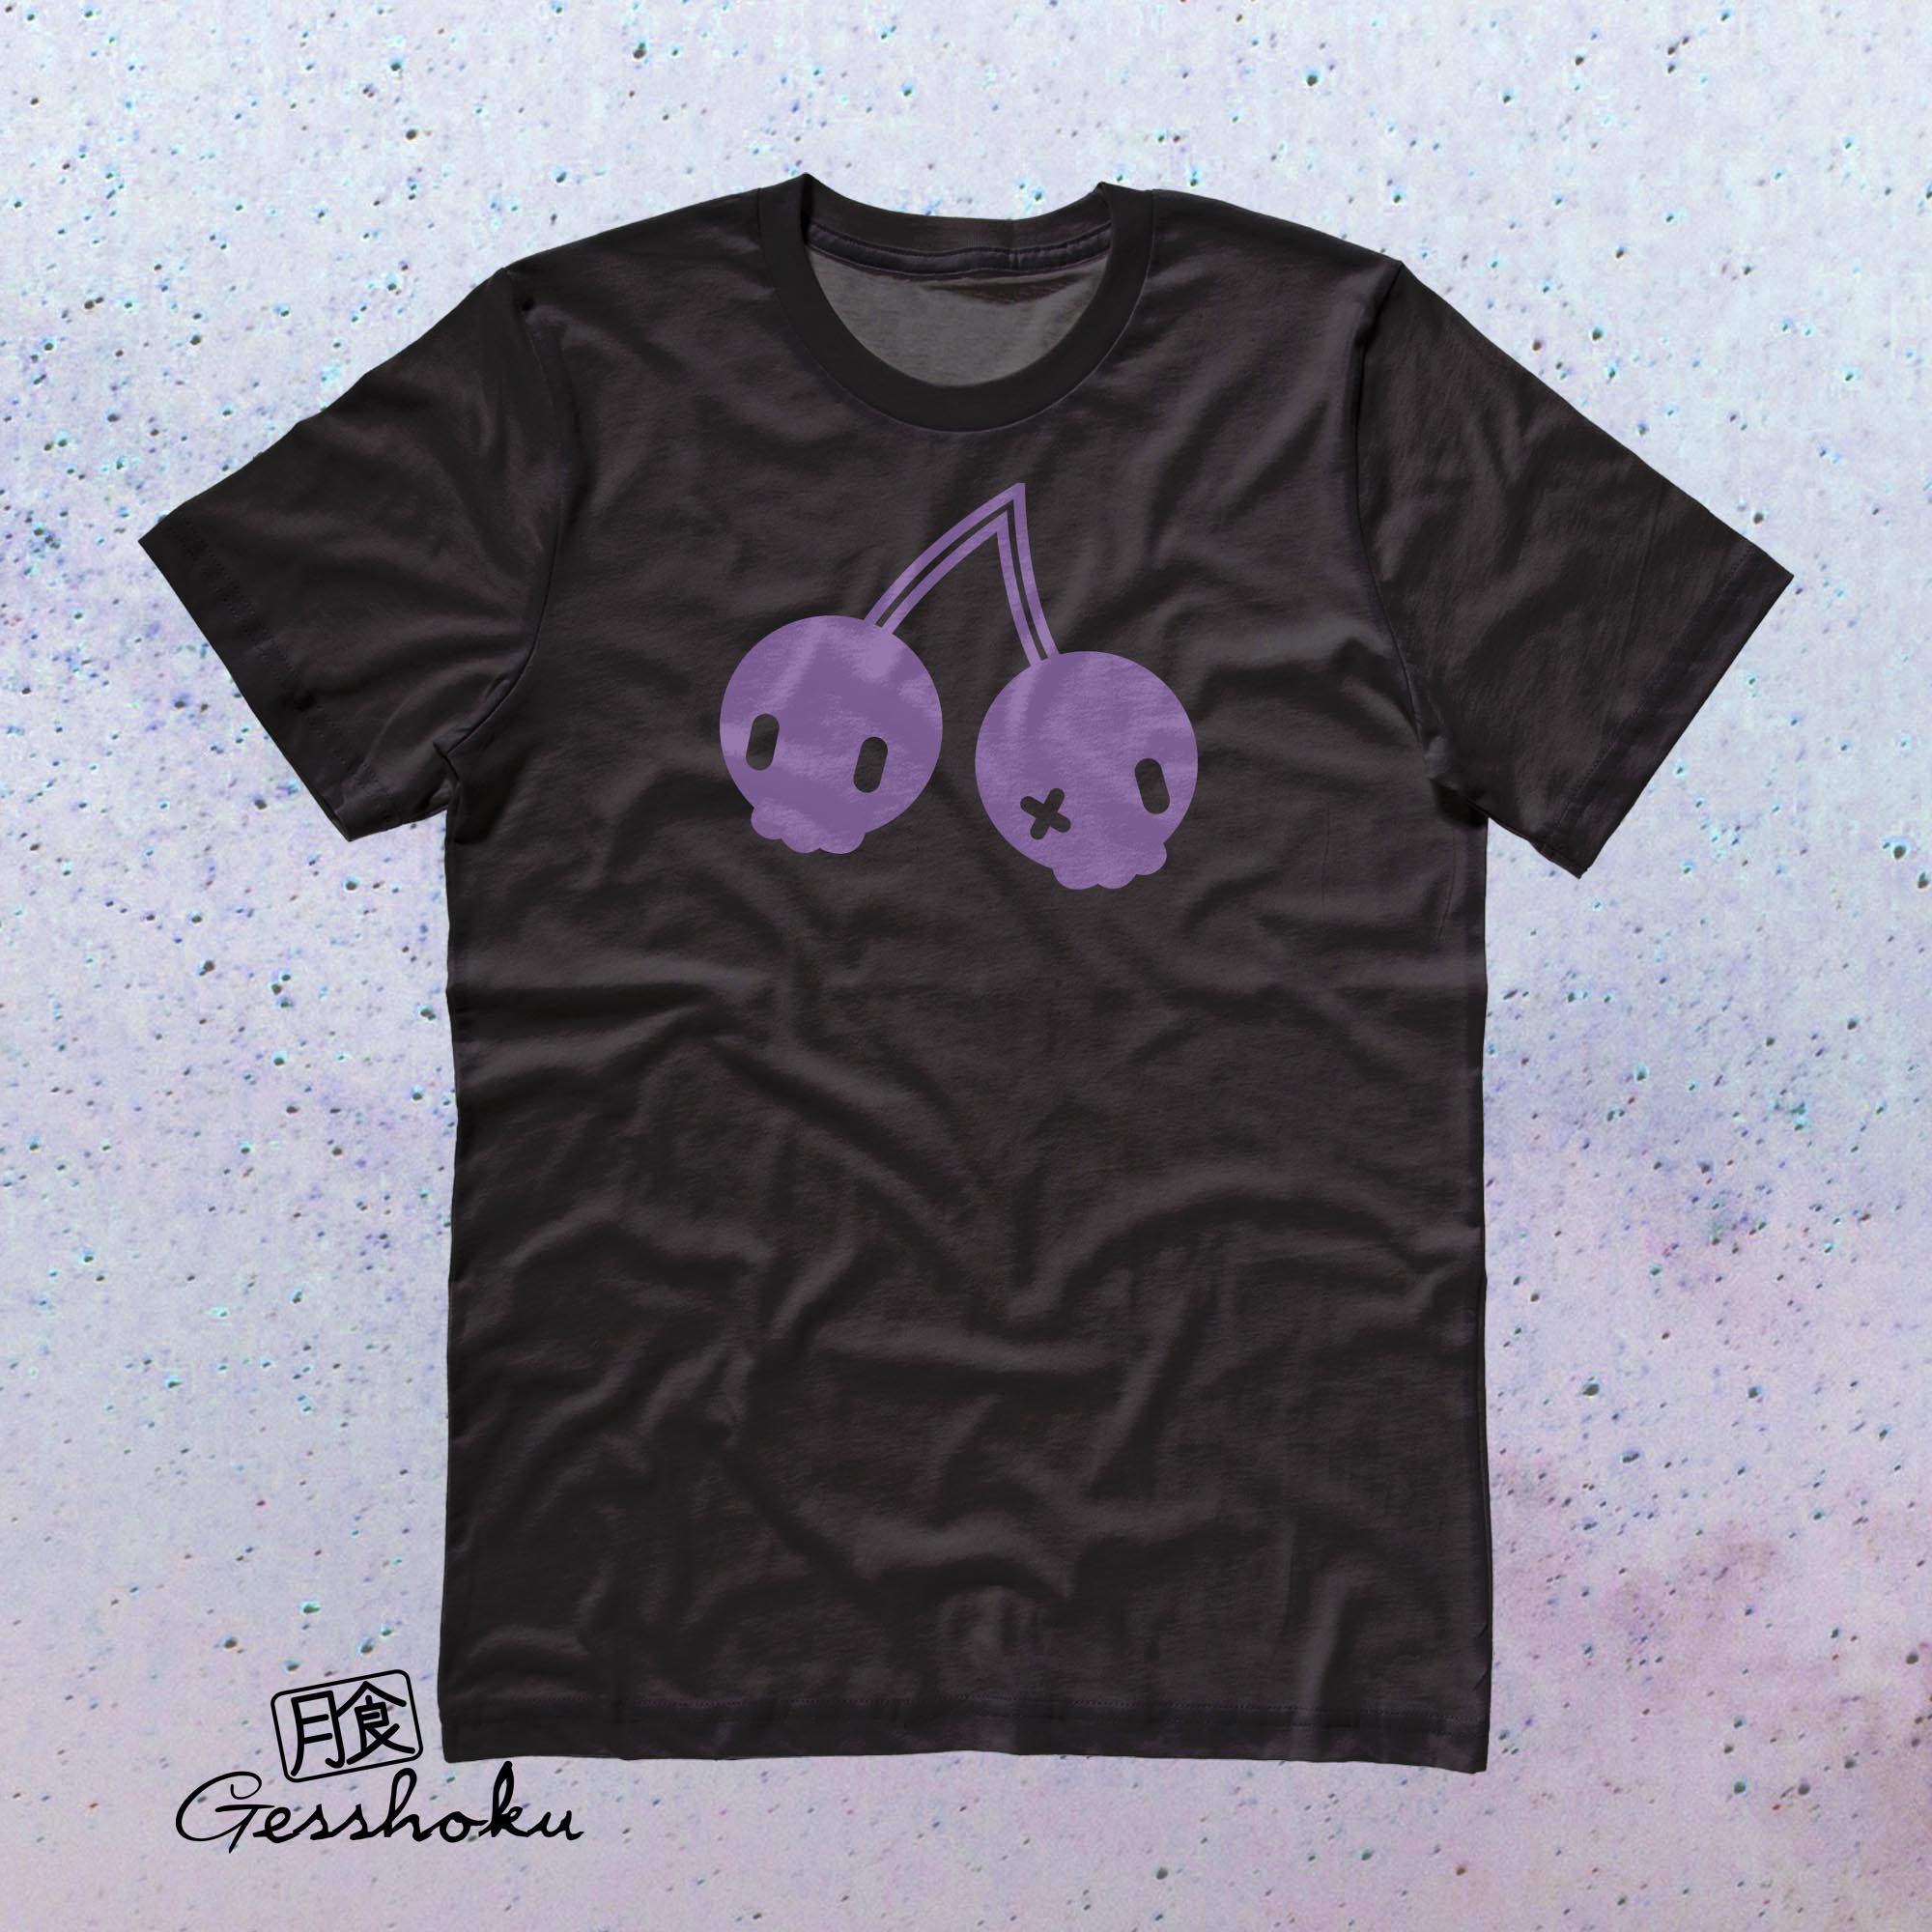 Cherry Skulls T-shirt by Dokkirii - Purple/Black